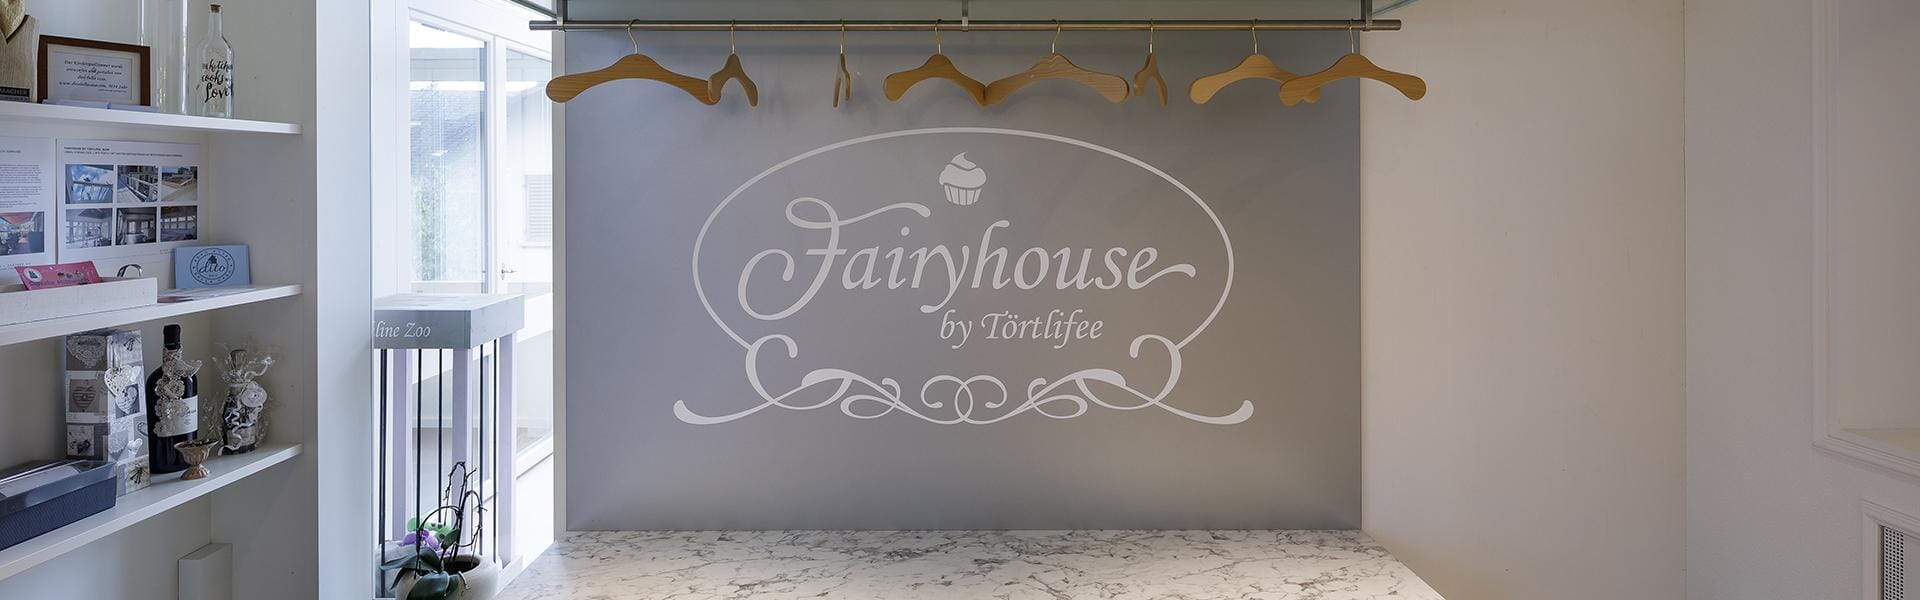 Ladenmacher AG Fairyhouse By Törtlifee Suhr 2018 10 Web